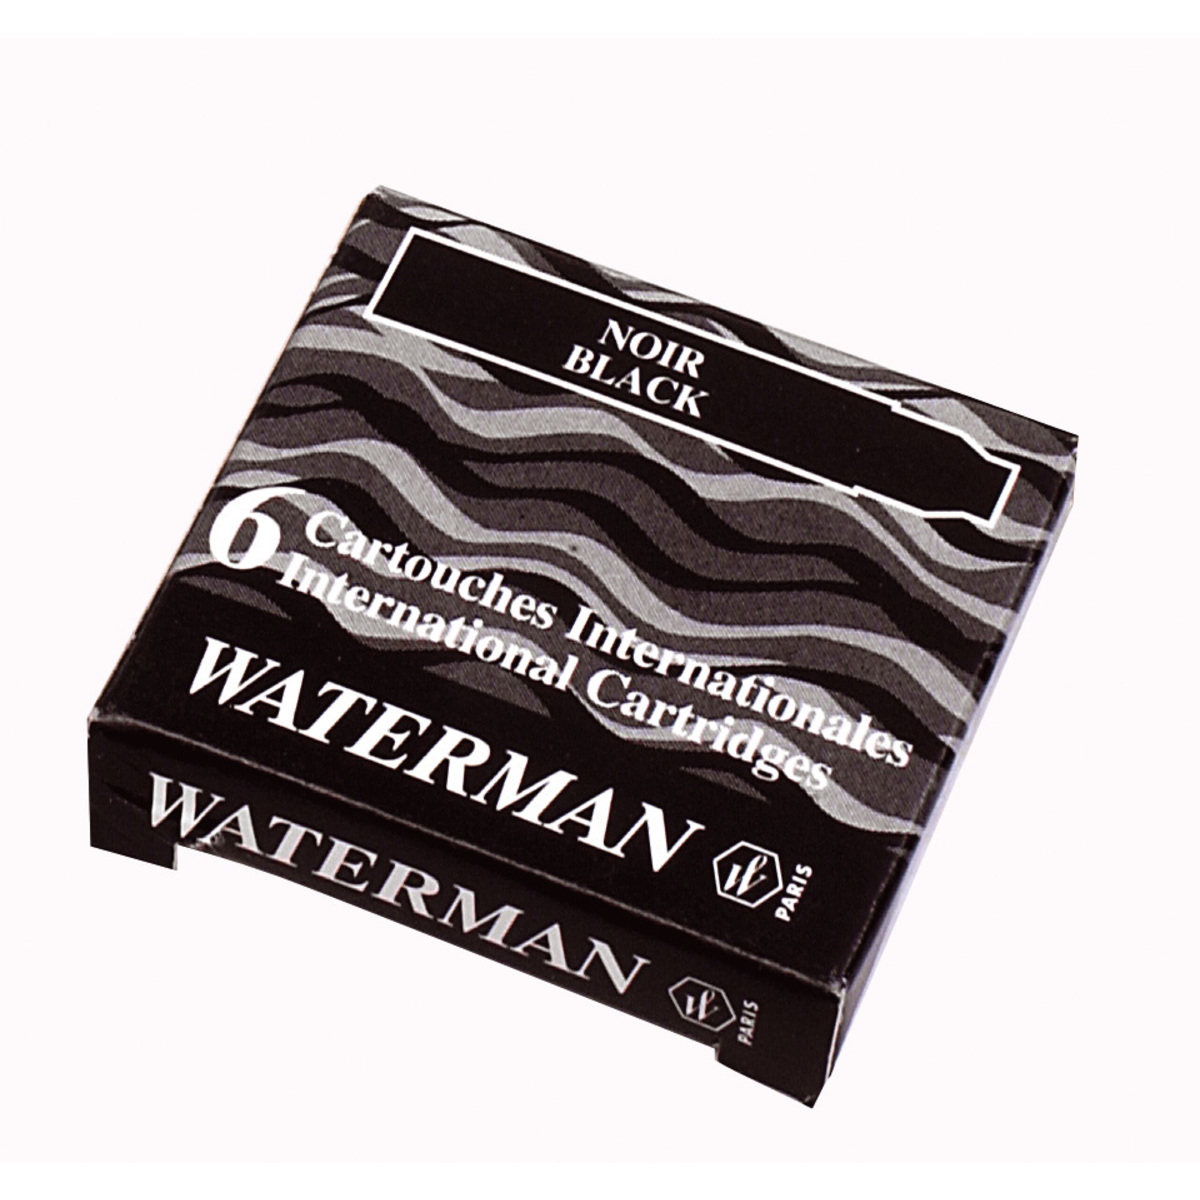 Cartouches d'encre Waterman - étui de 8